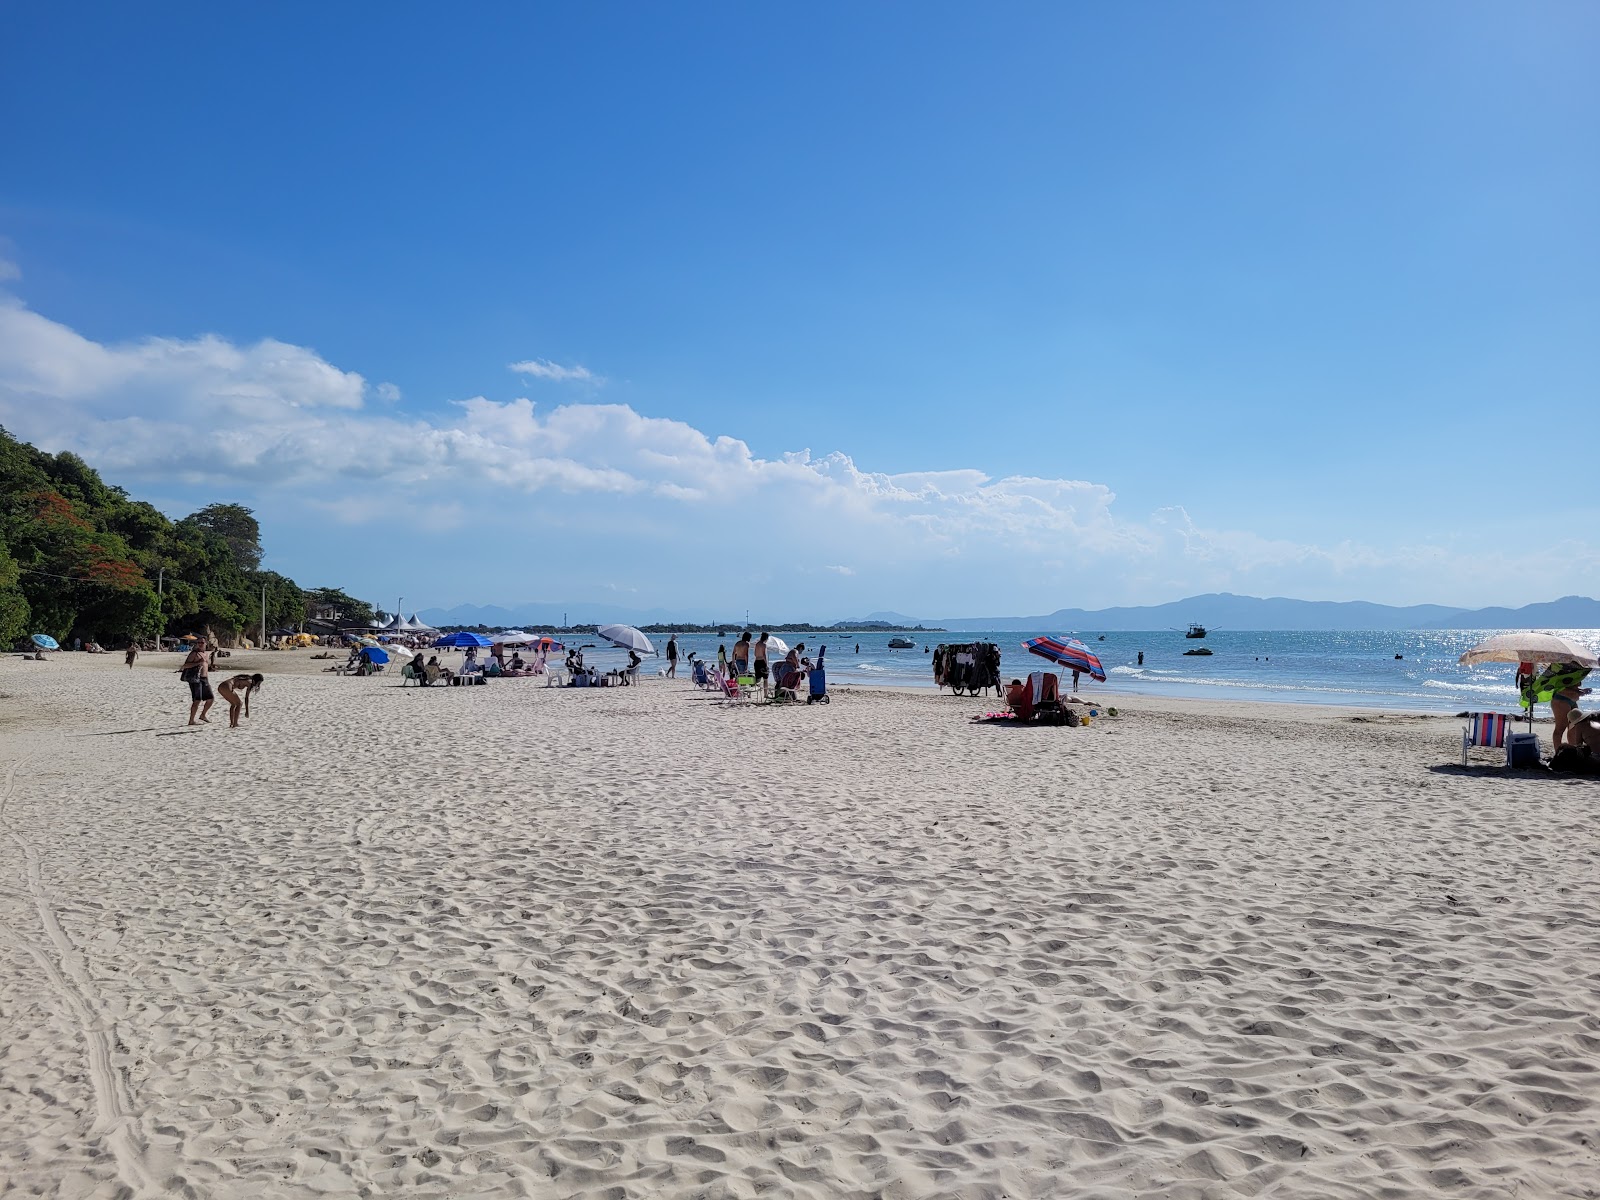 Foto di Praia do Forte con una superficie del sabbia fine e luminosa